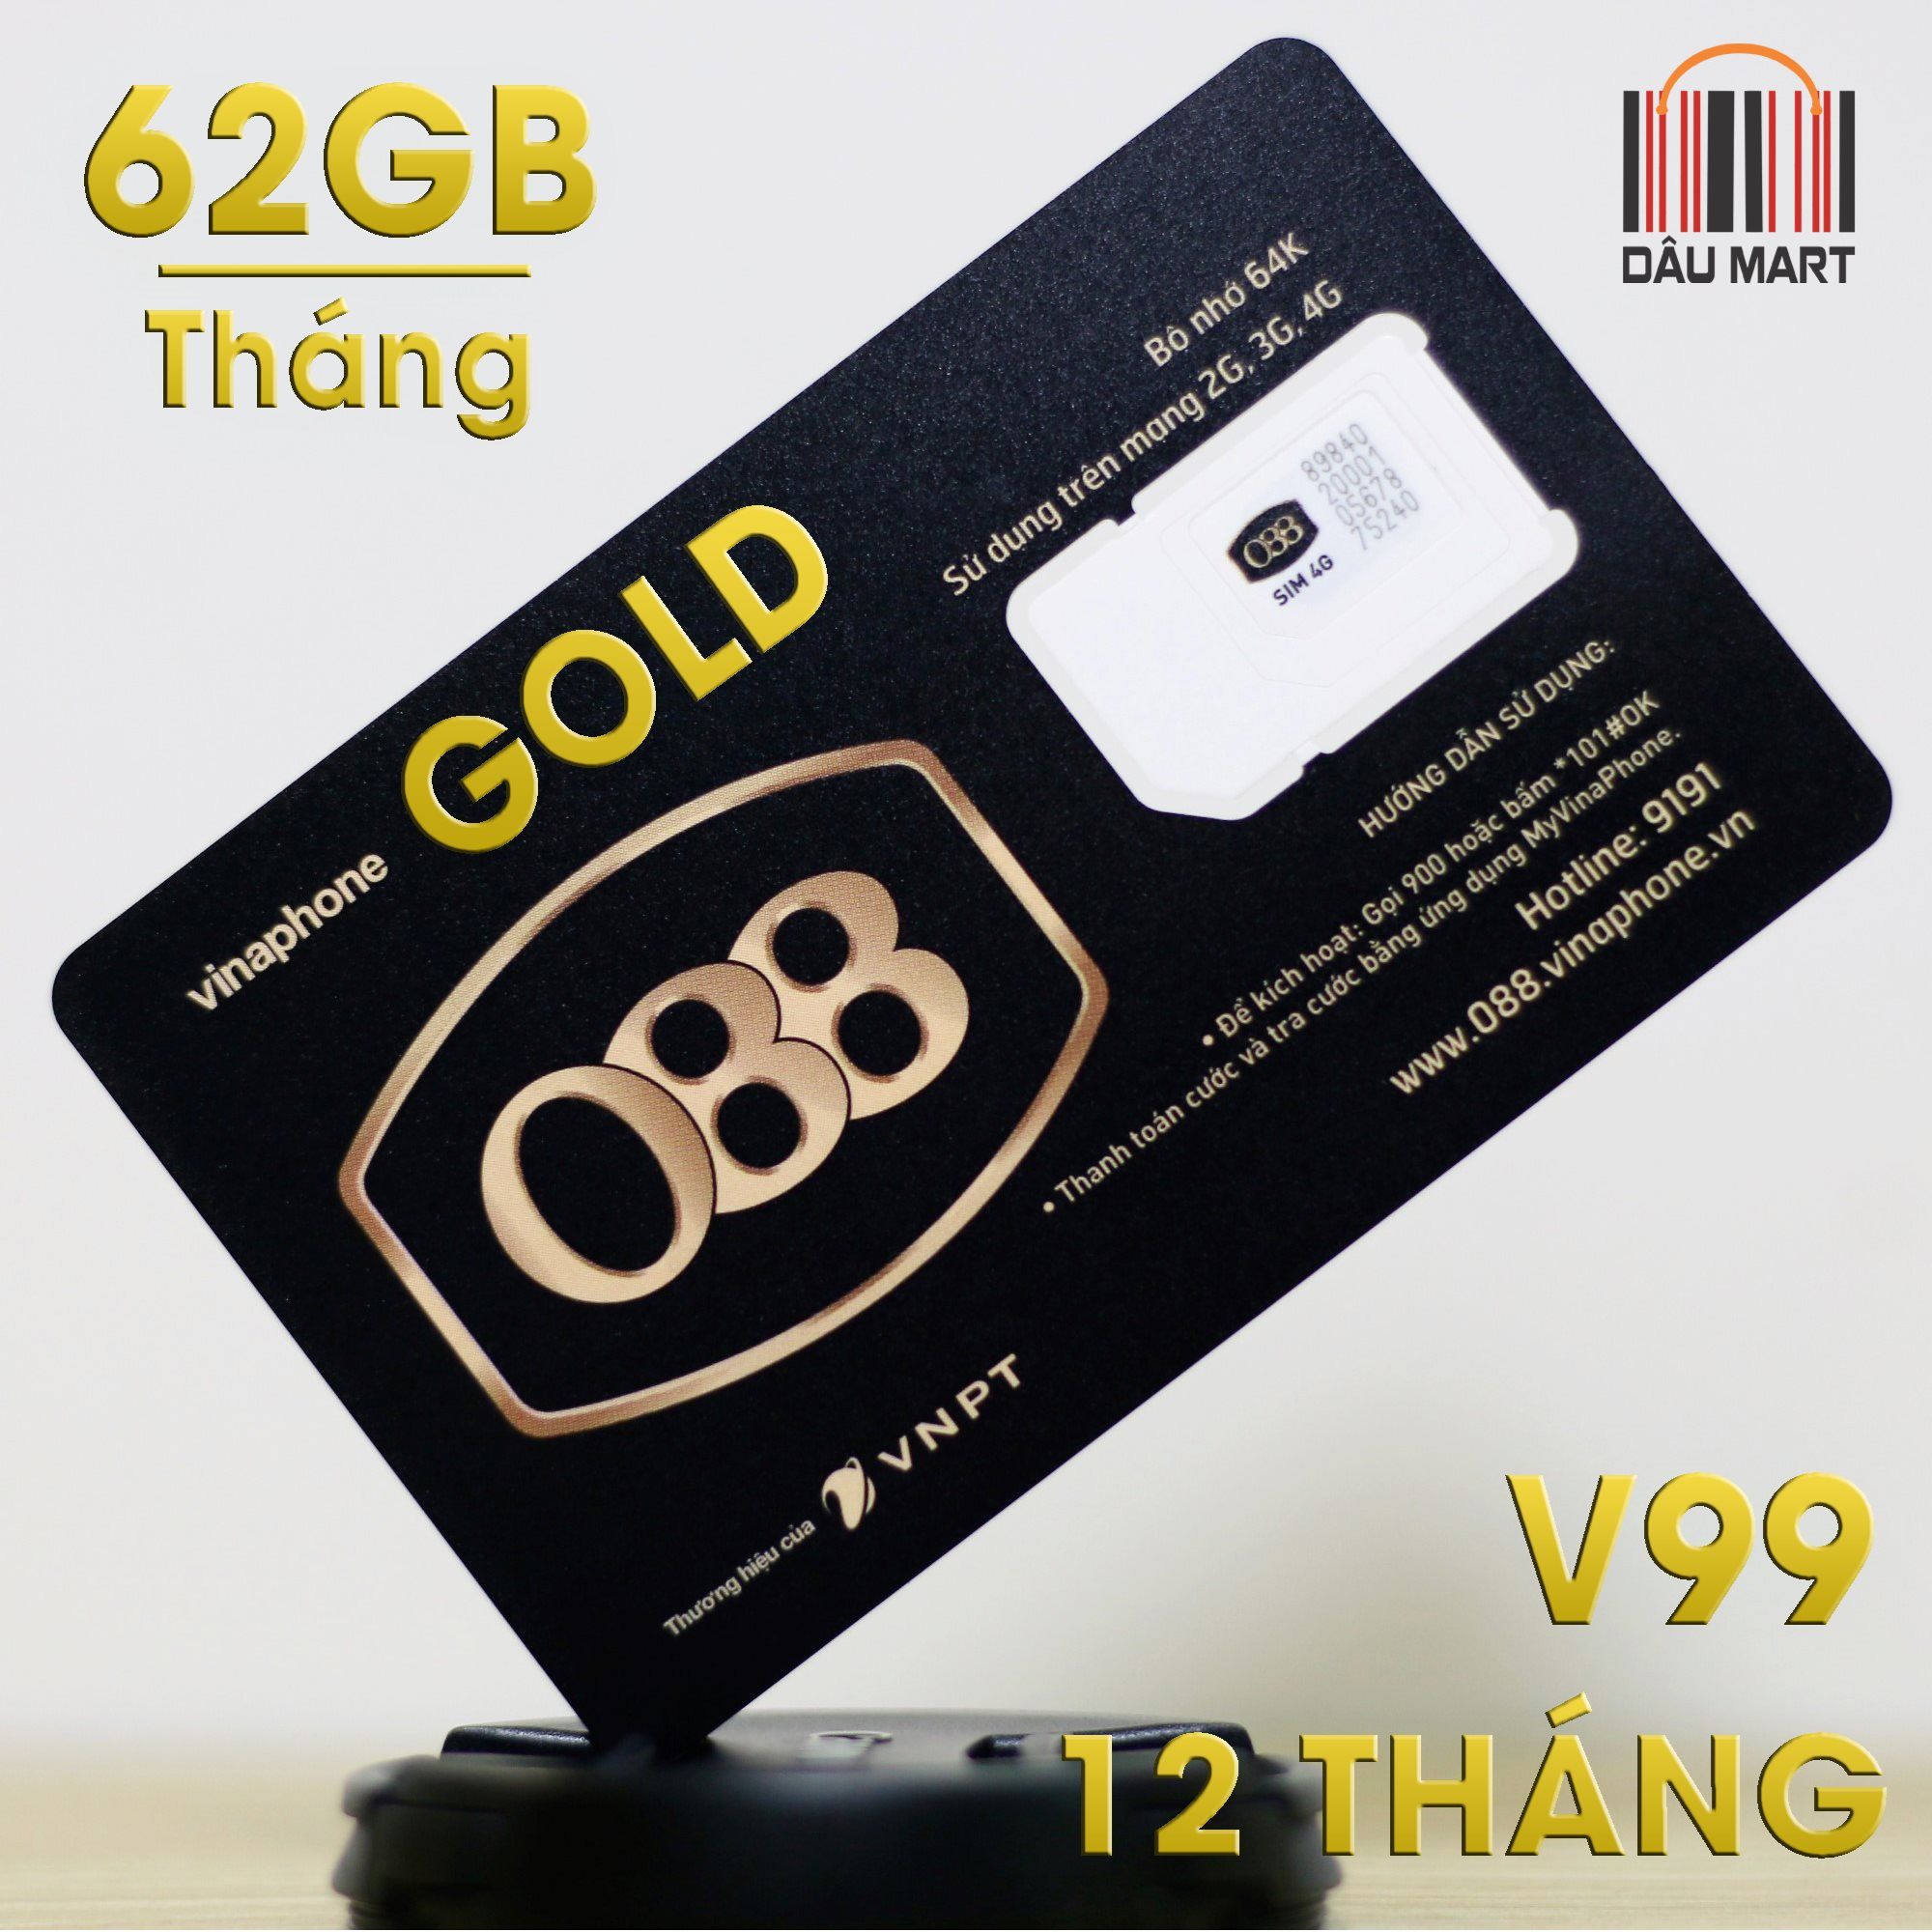 SIM 4G Vina Gold V99 Tặng 62GB/Tháng Gọi Miễn Phí 43.000 phút